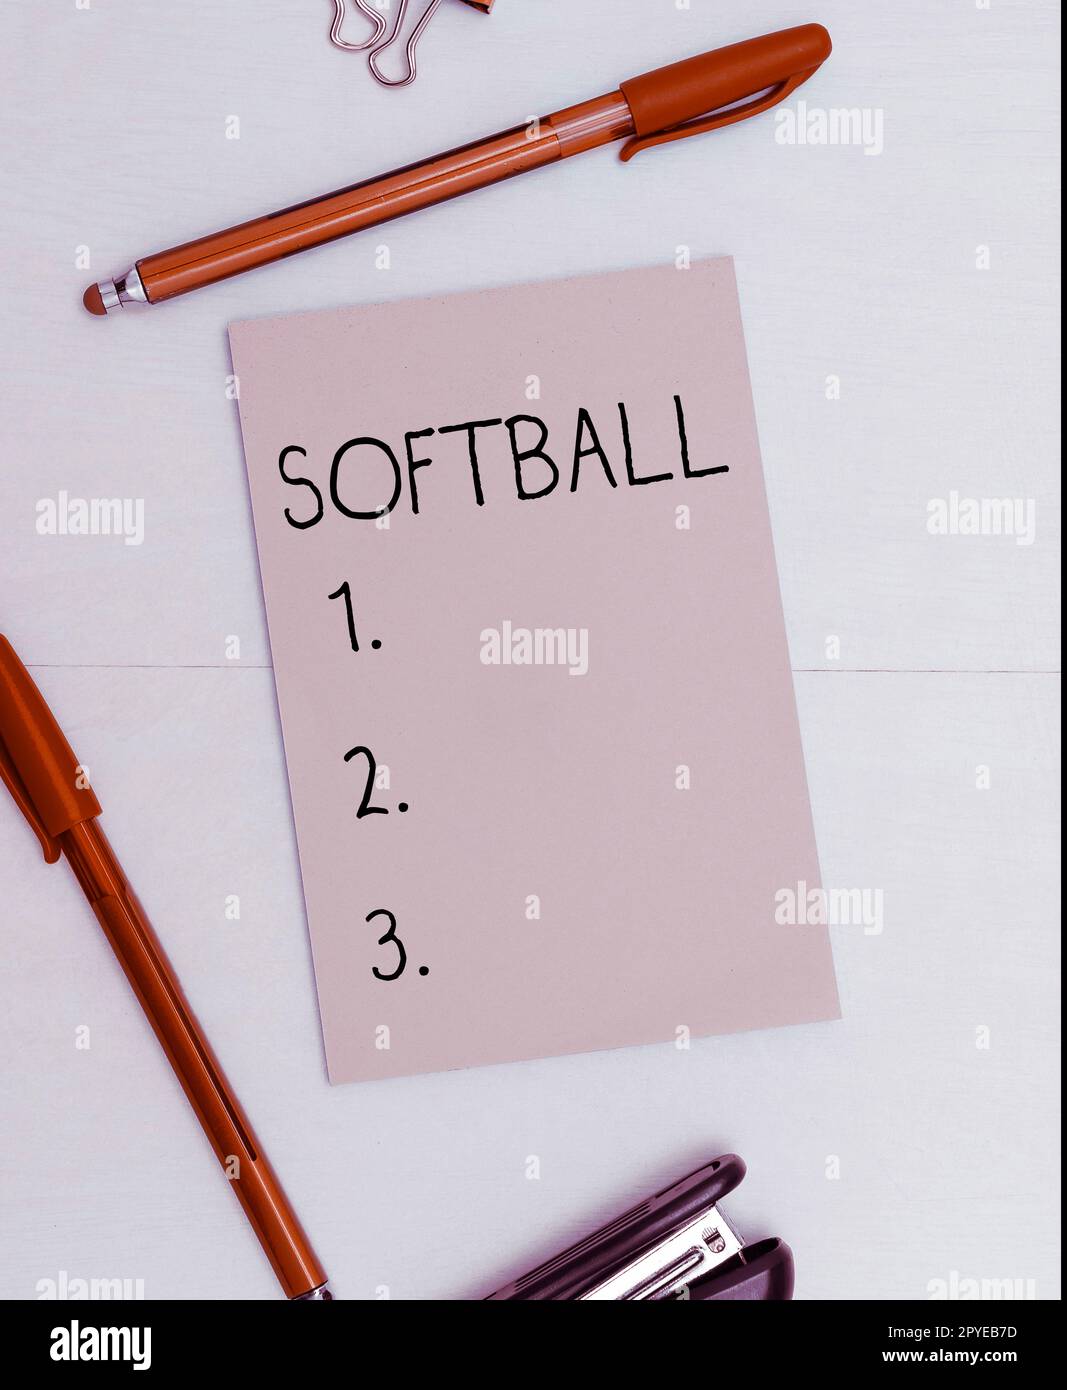 Affiche montrant le softball. Photo conceptuelle un sport semblable au baseball joué avec une balle et une batte Banque D'Images